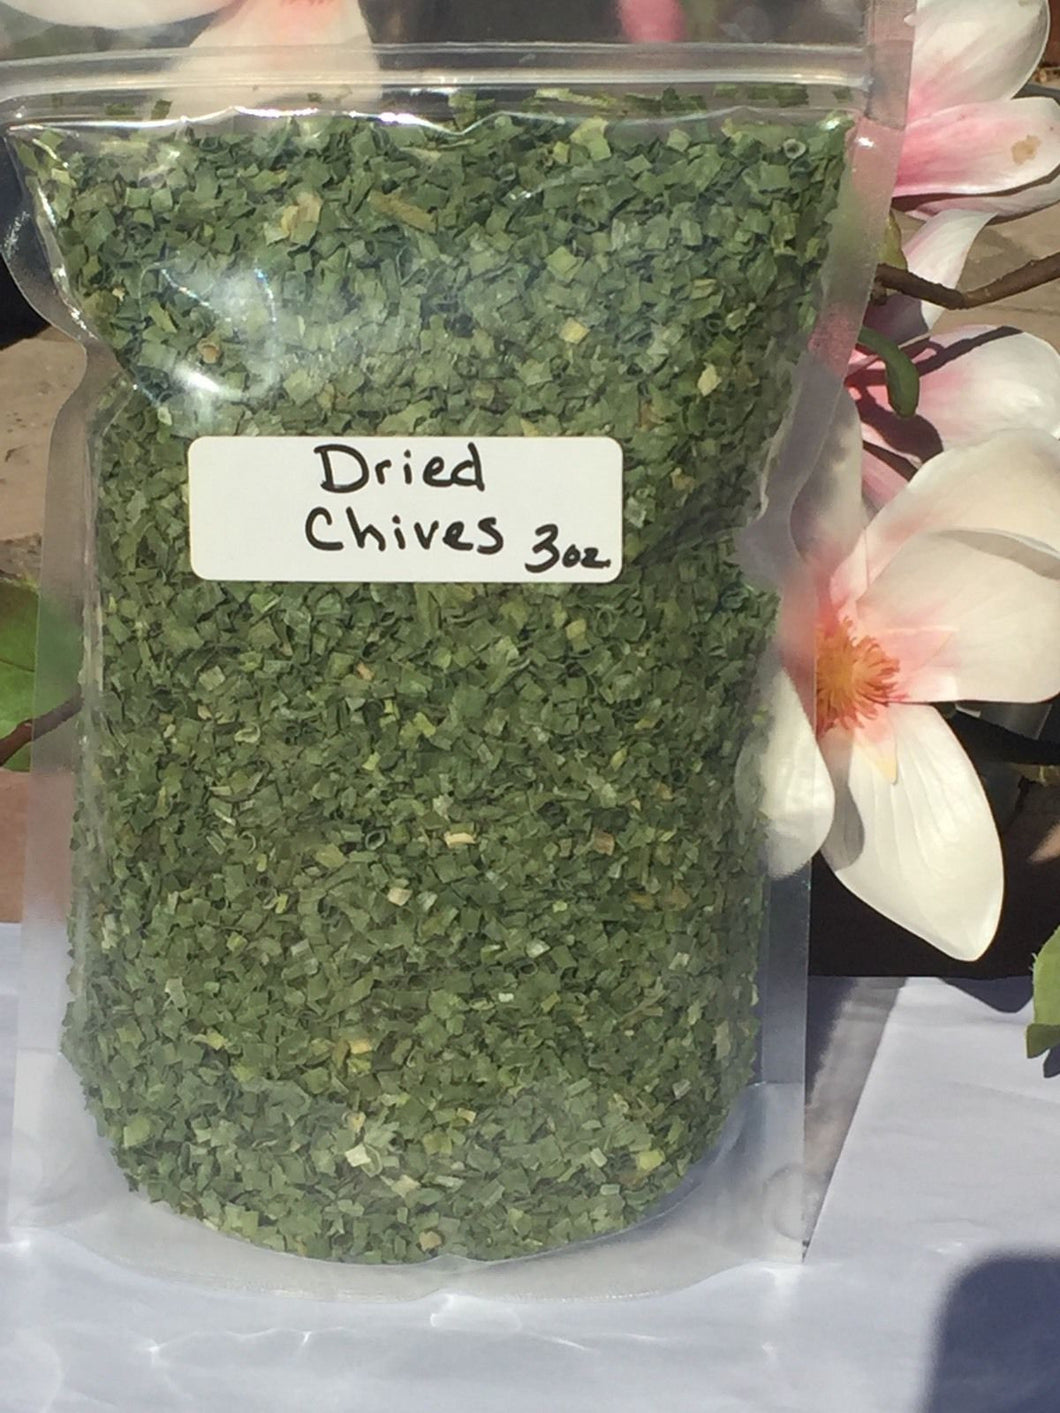 Chives, Dried & Chopped, 2 oz., 3 oz. or 6 oz.